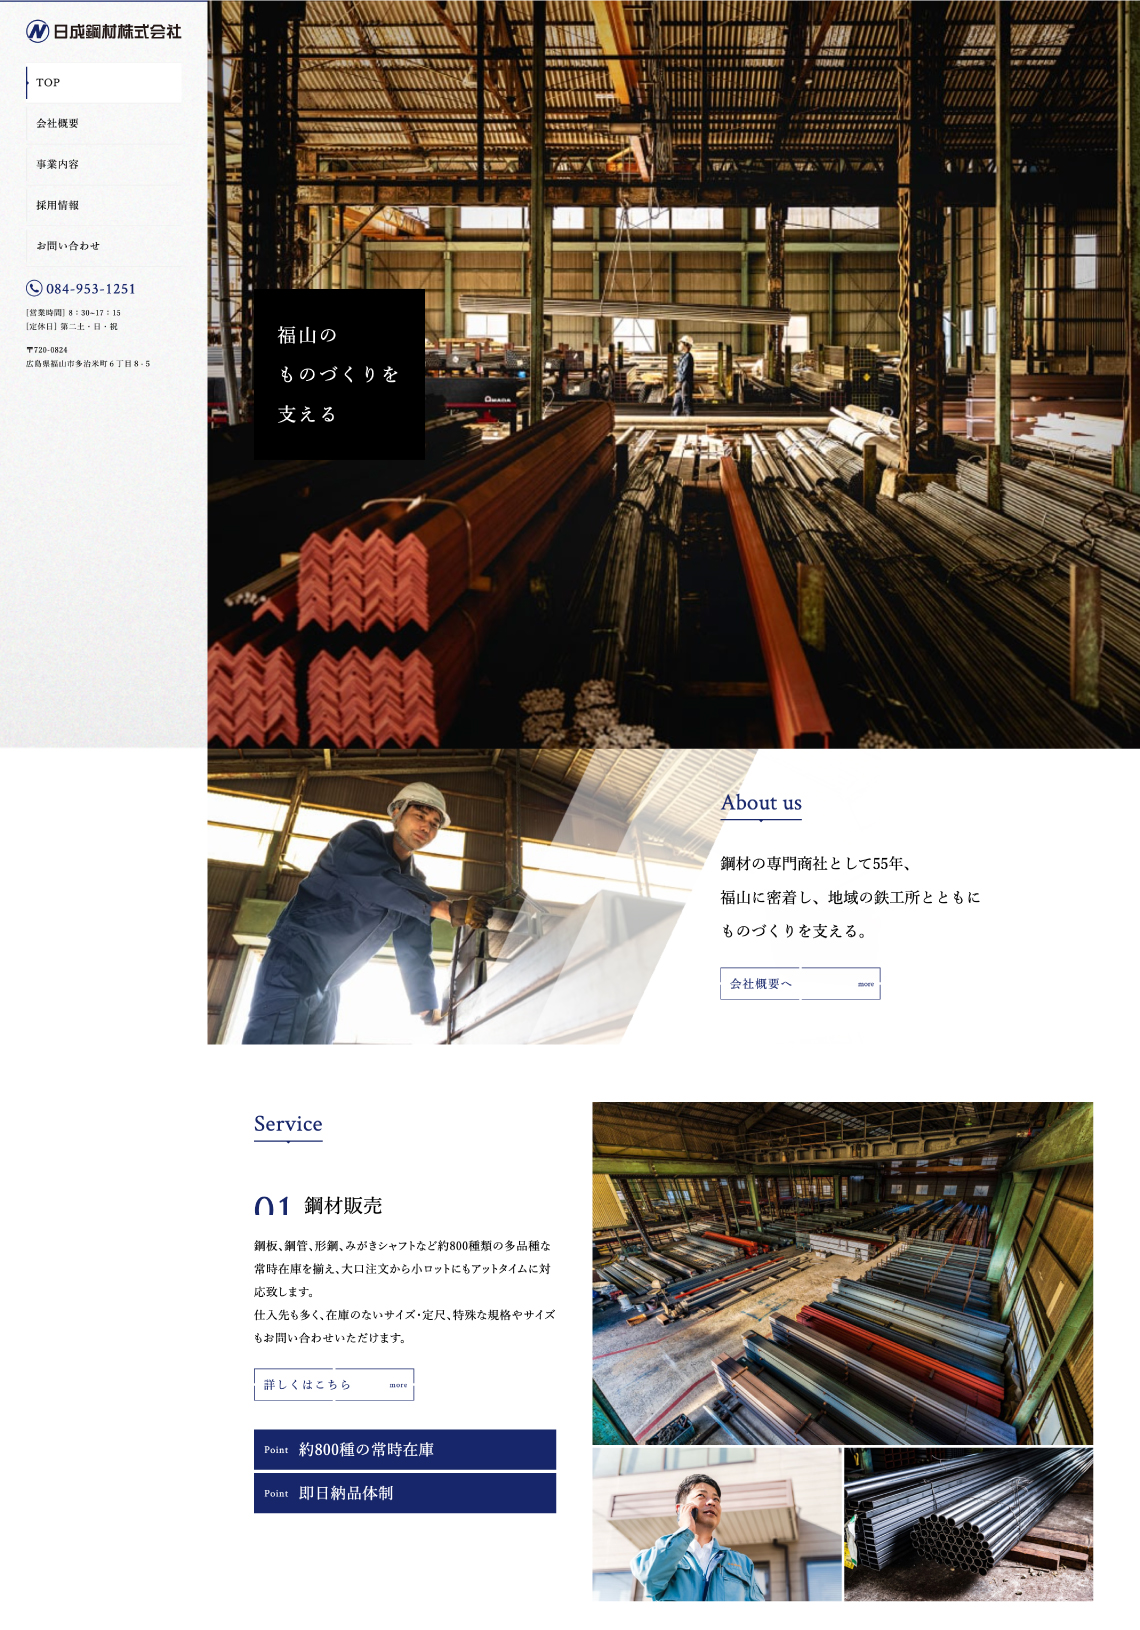 日成鋼材株式会社様のサイト制作